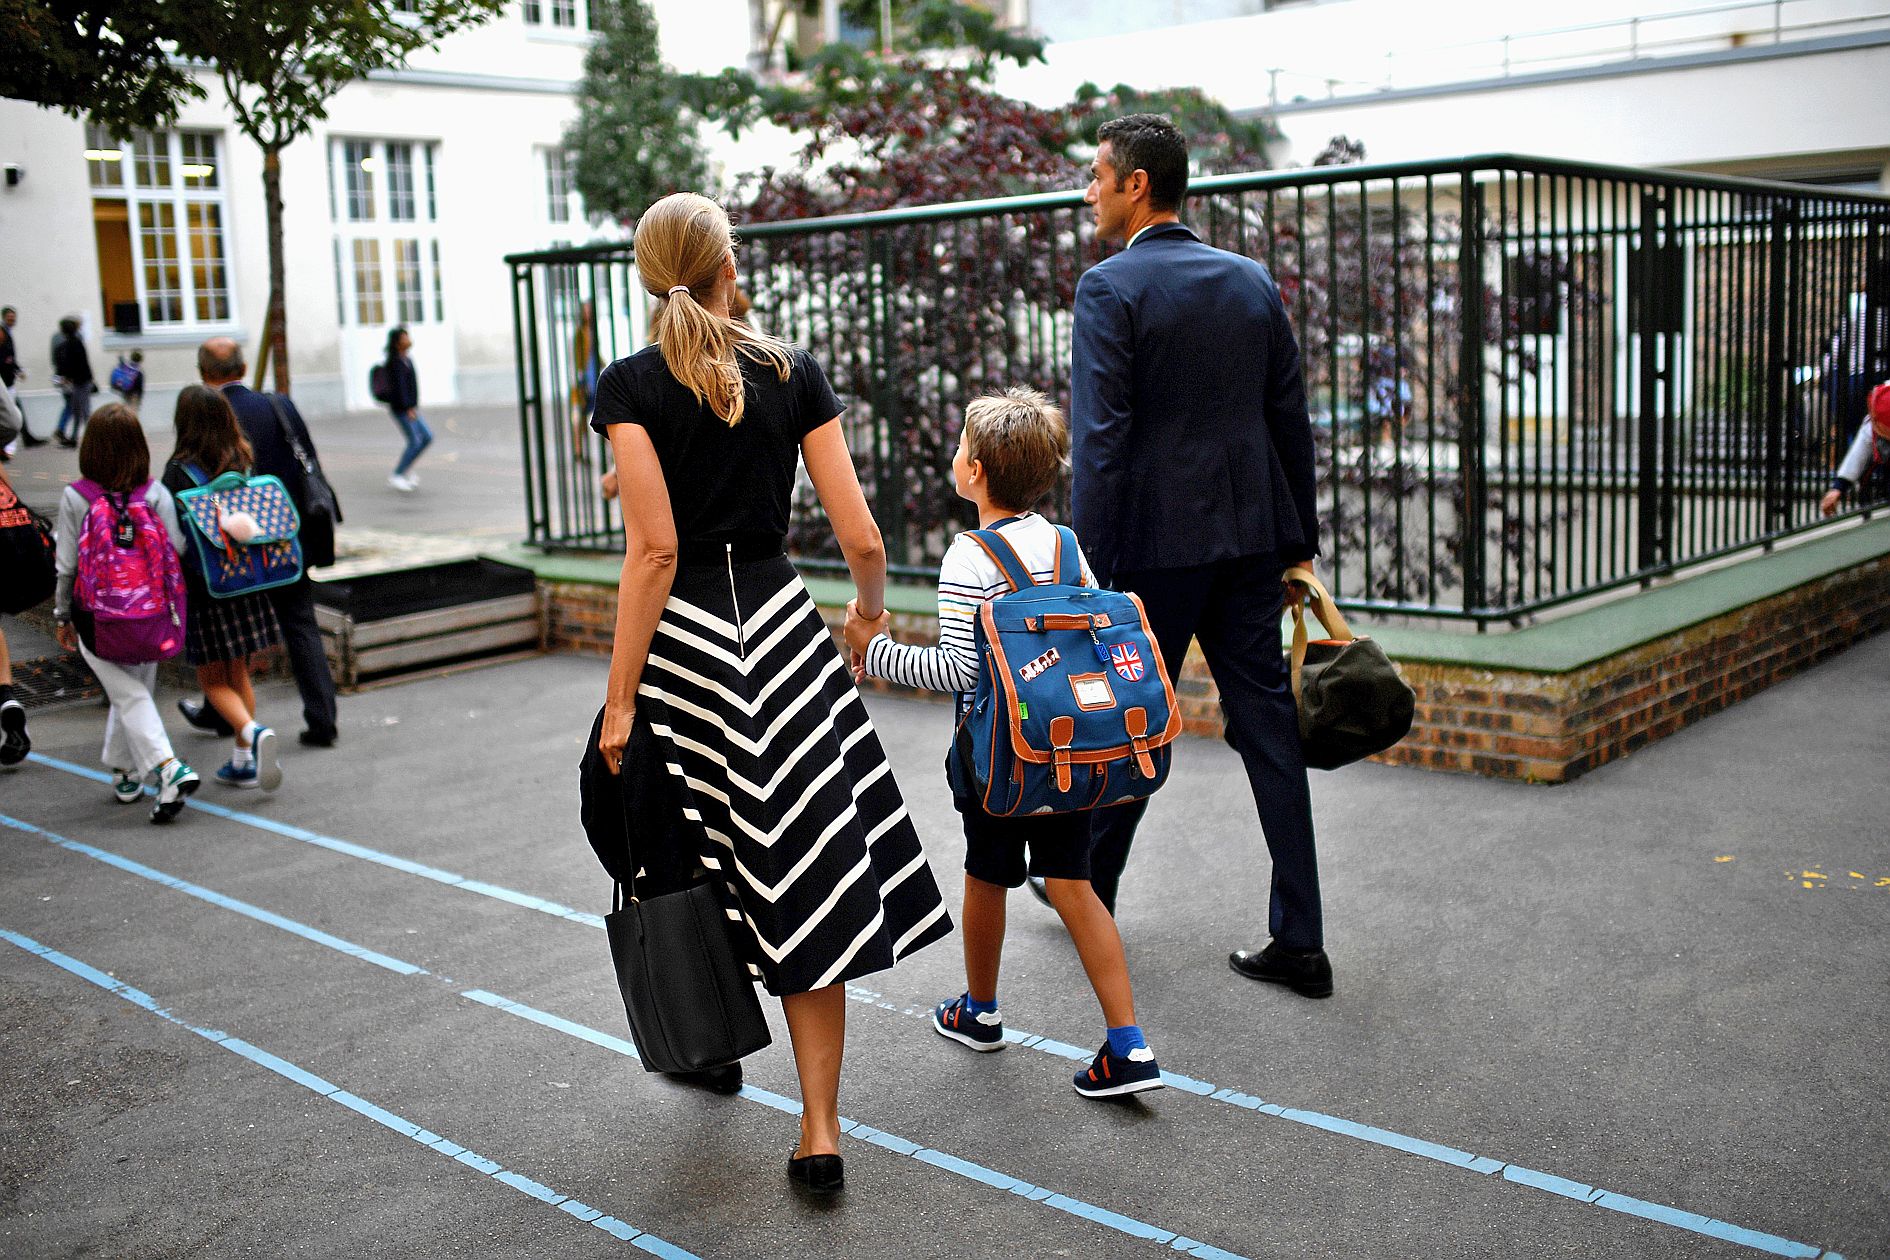 Le coût de la rentrée scolaire a augmenté de 0,17 % comparé à 2018, selon l’enquête de la Confédération syndicale des familles.Photo AFP